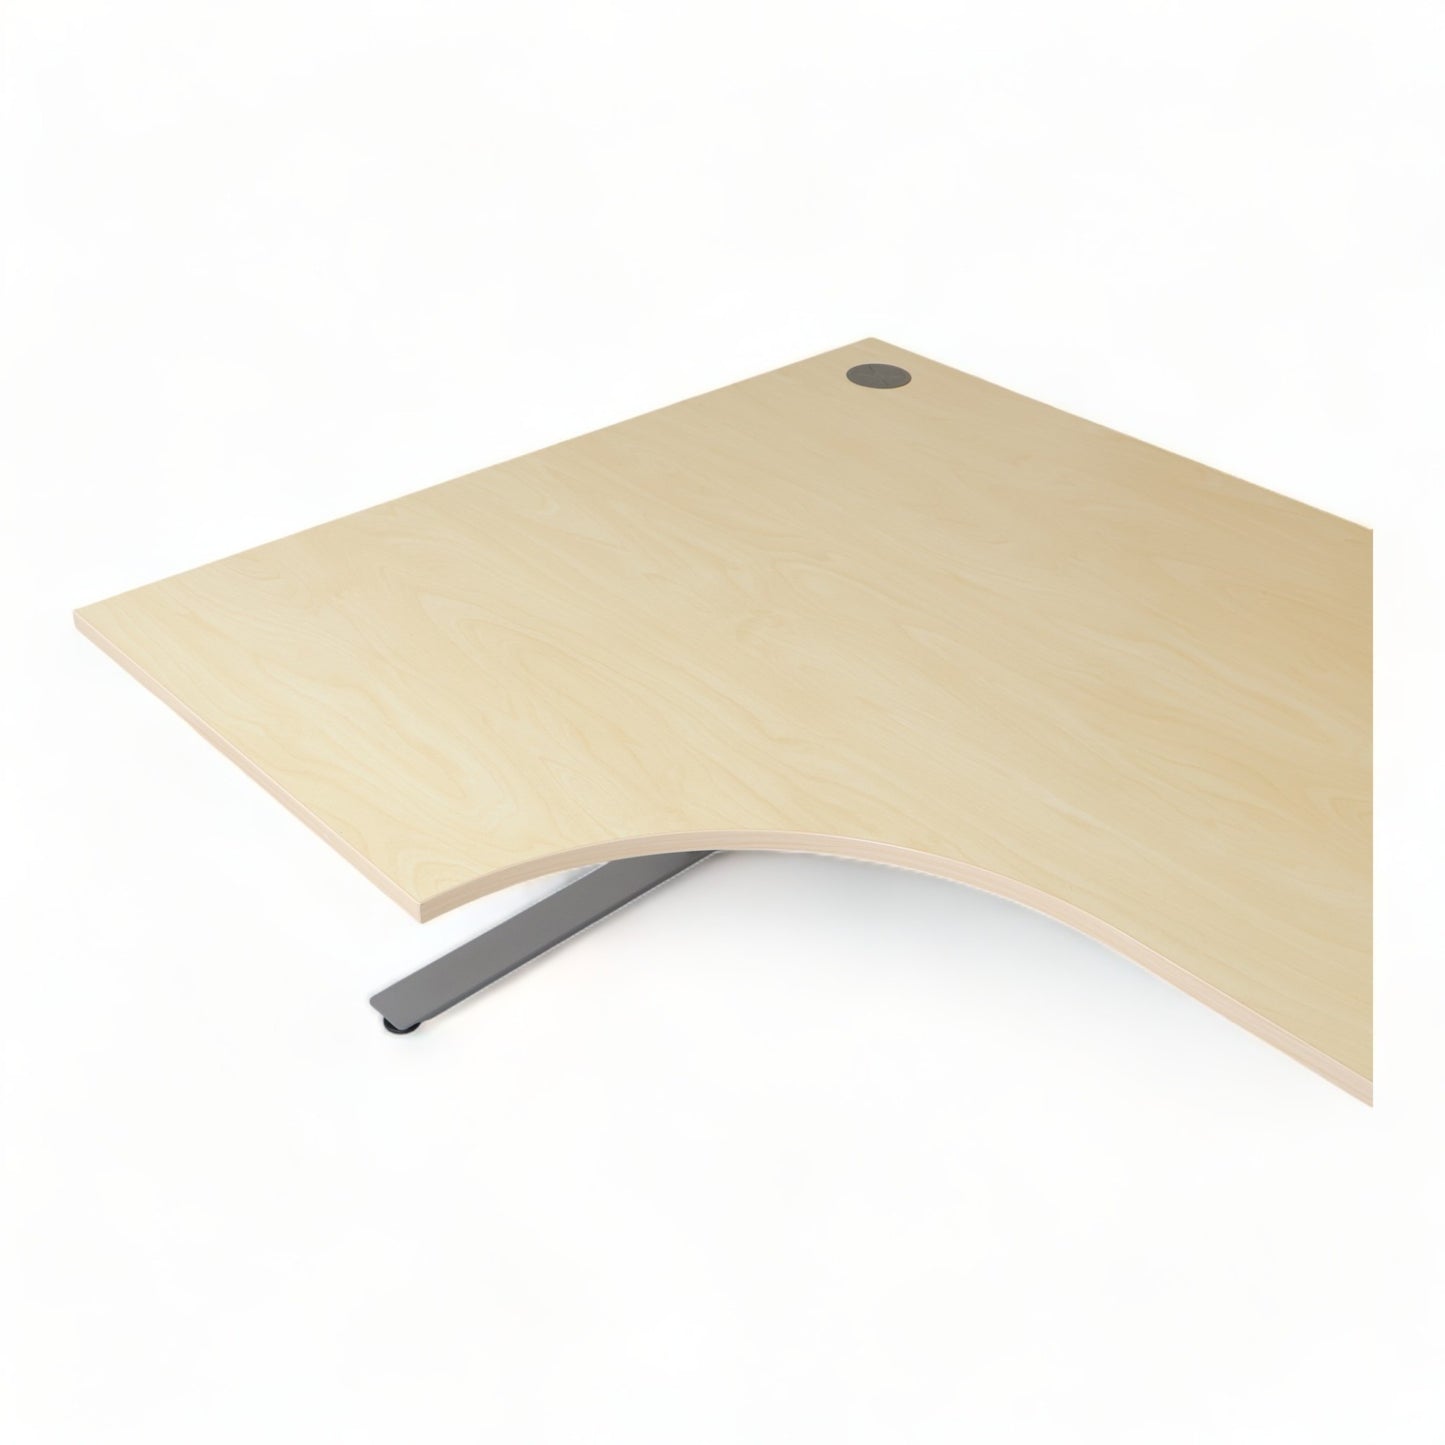 Kvalitetsikret | 180x120, elektrisk hev/senk bord med sving